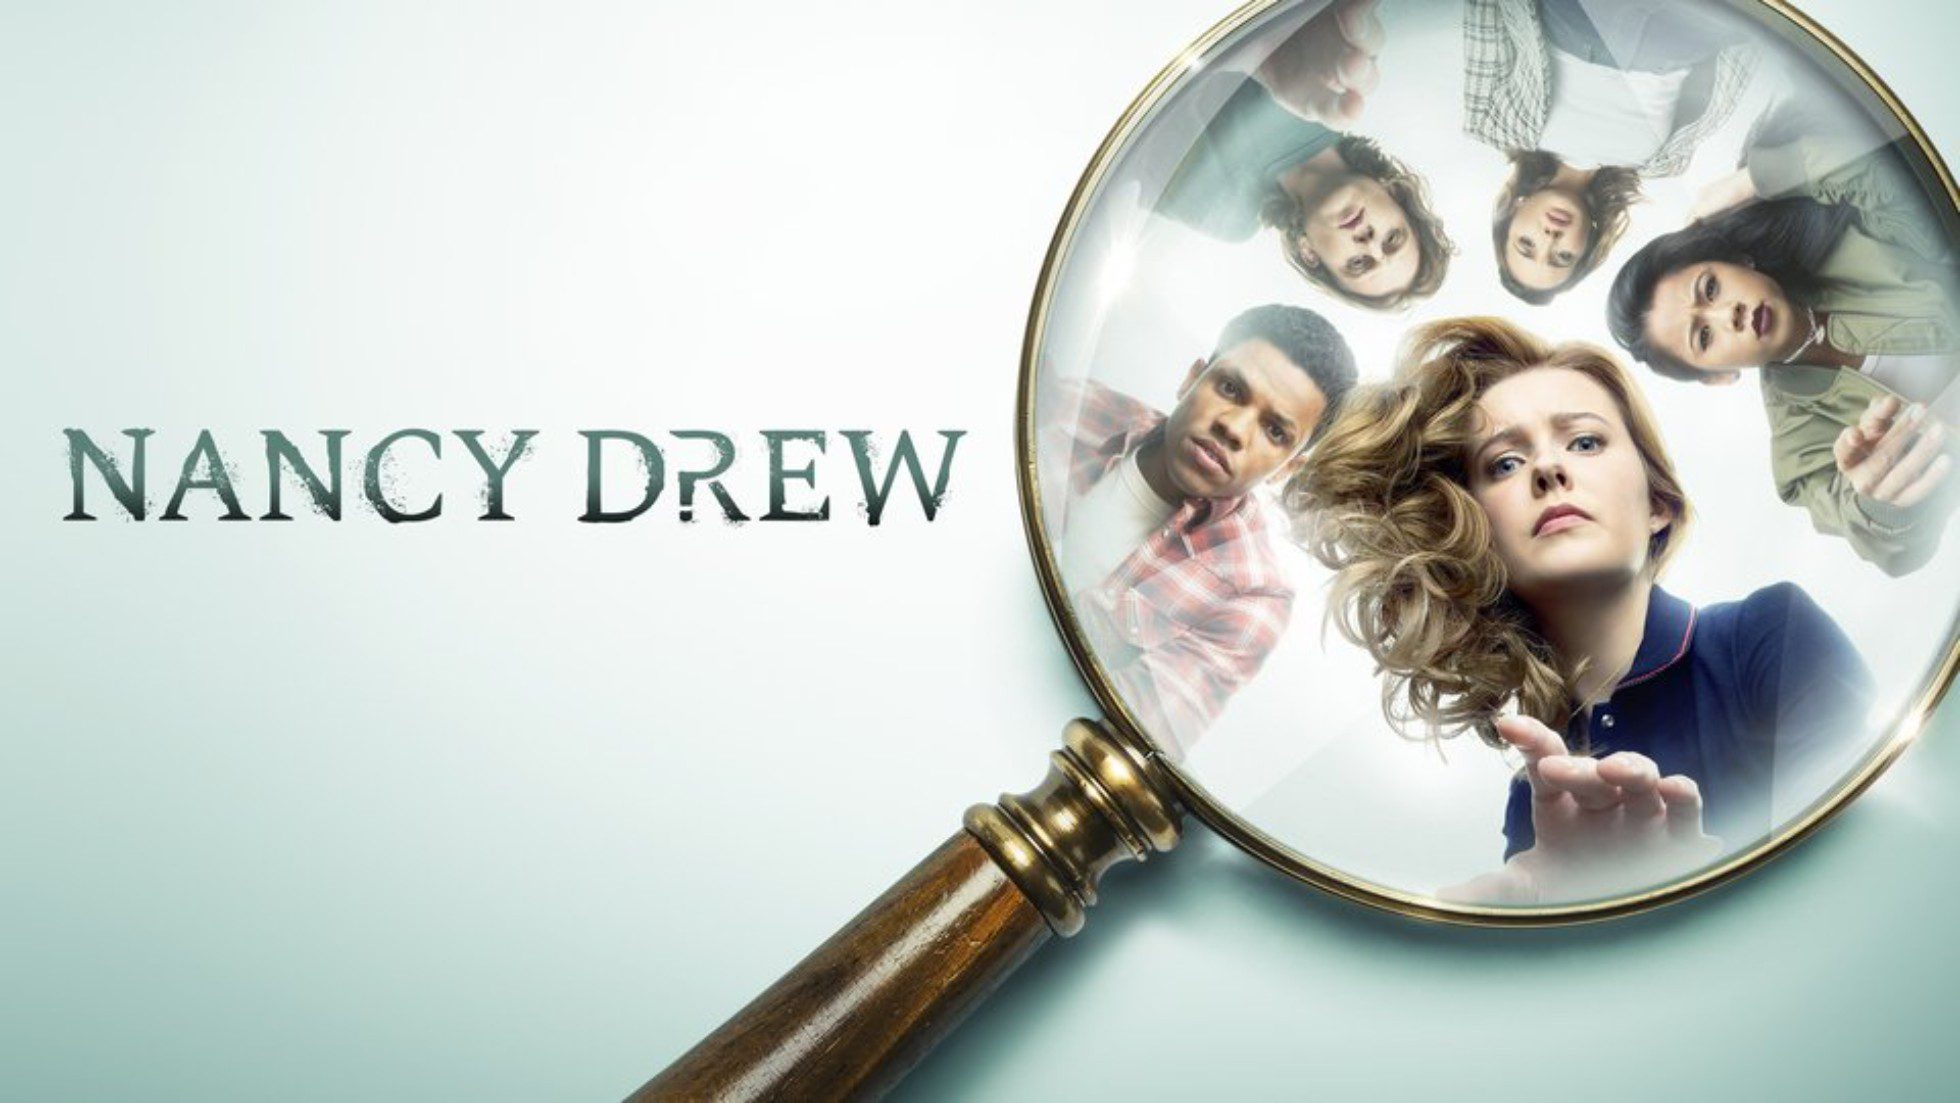 Nancy Drew Season 4 Release